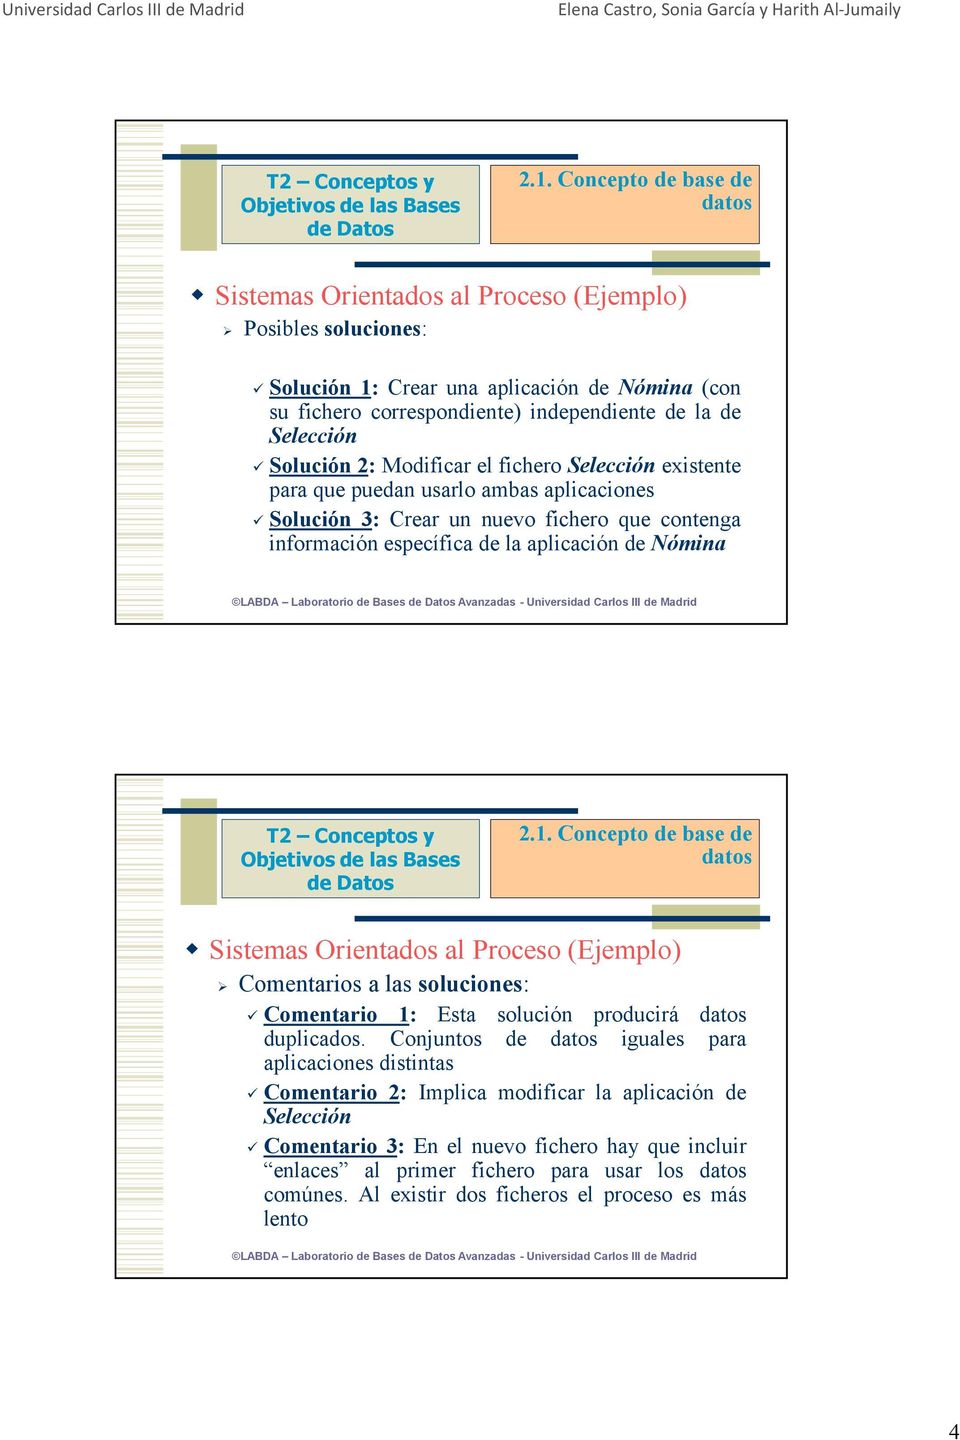 Avanzadas - Universidad Carlos III de Madrid Sistemas Orientados al Proceso (Ejemplo) Comentarios a las soluciones: Comentario 1: Esta solución producirá duplicados.